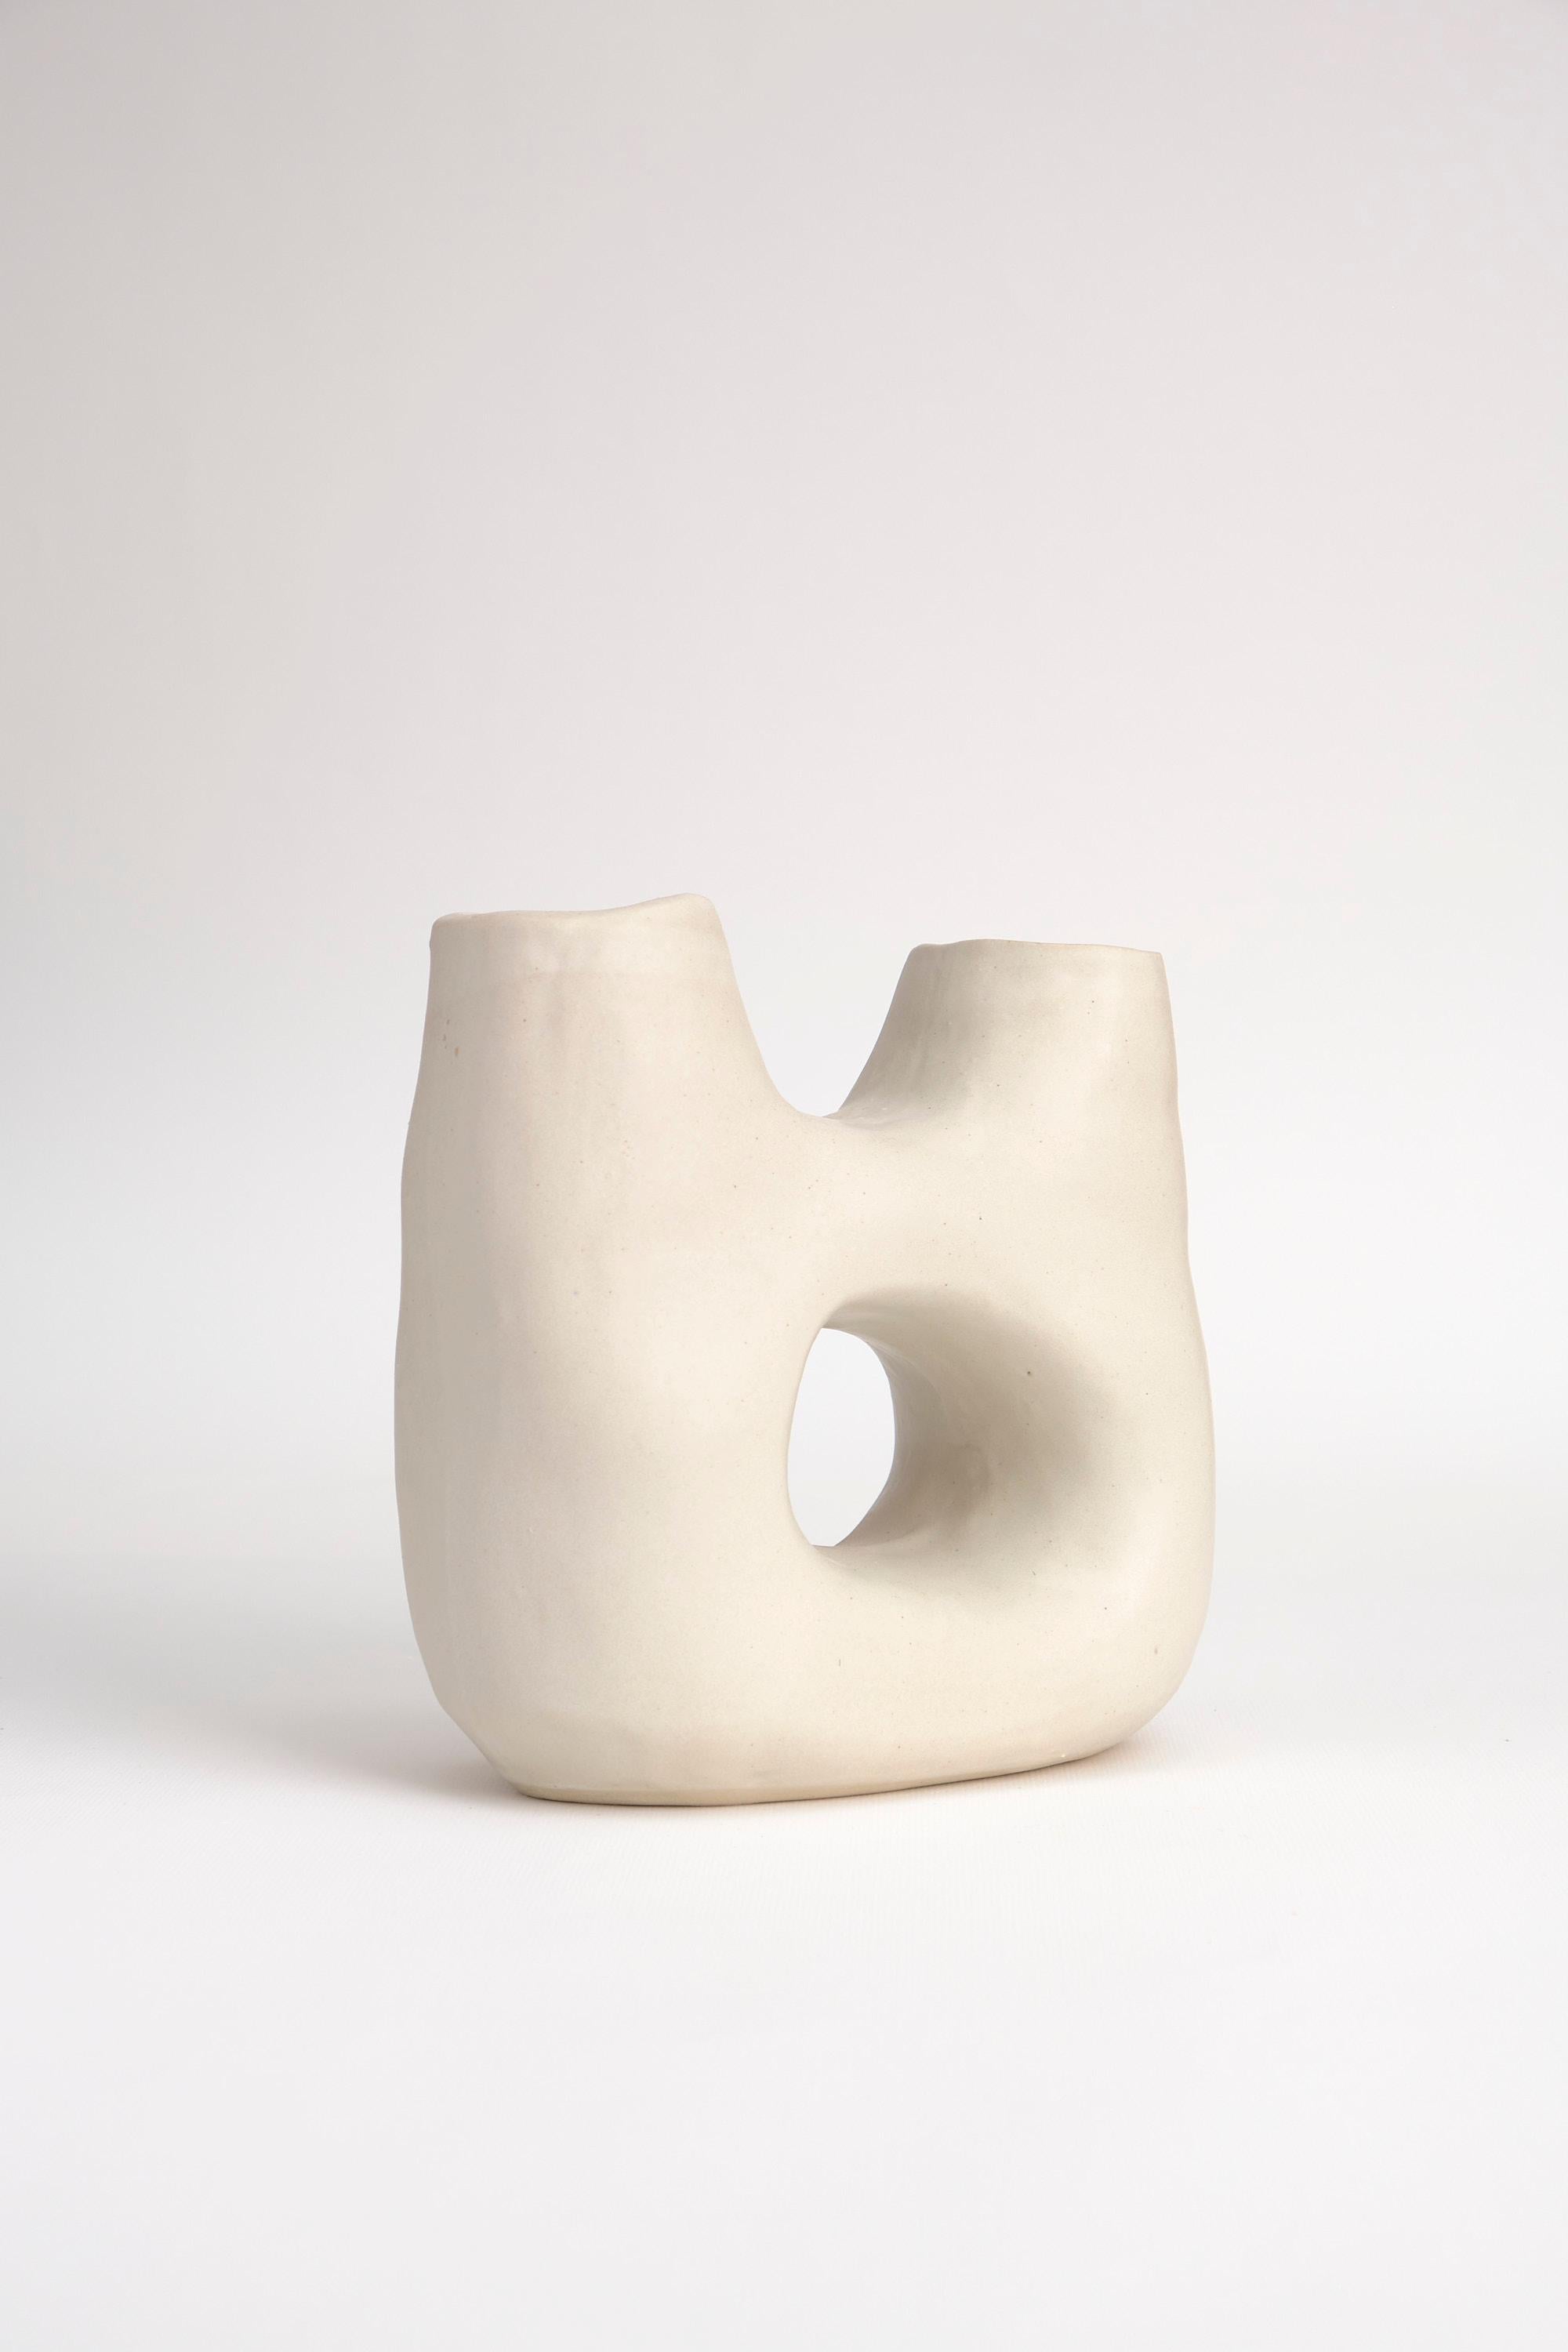 Vase sculptural en céramique de la collection permanente.

Dimensions : 19 x 9 x 18